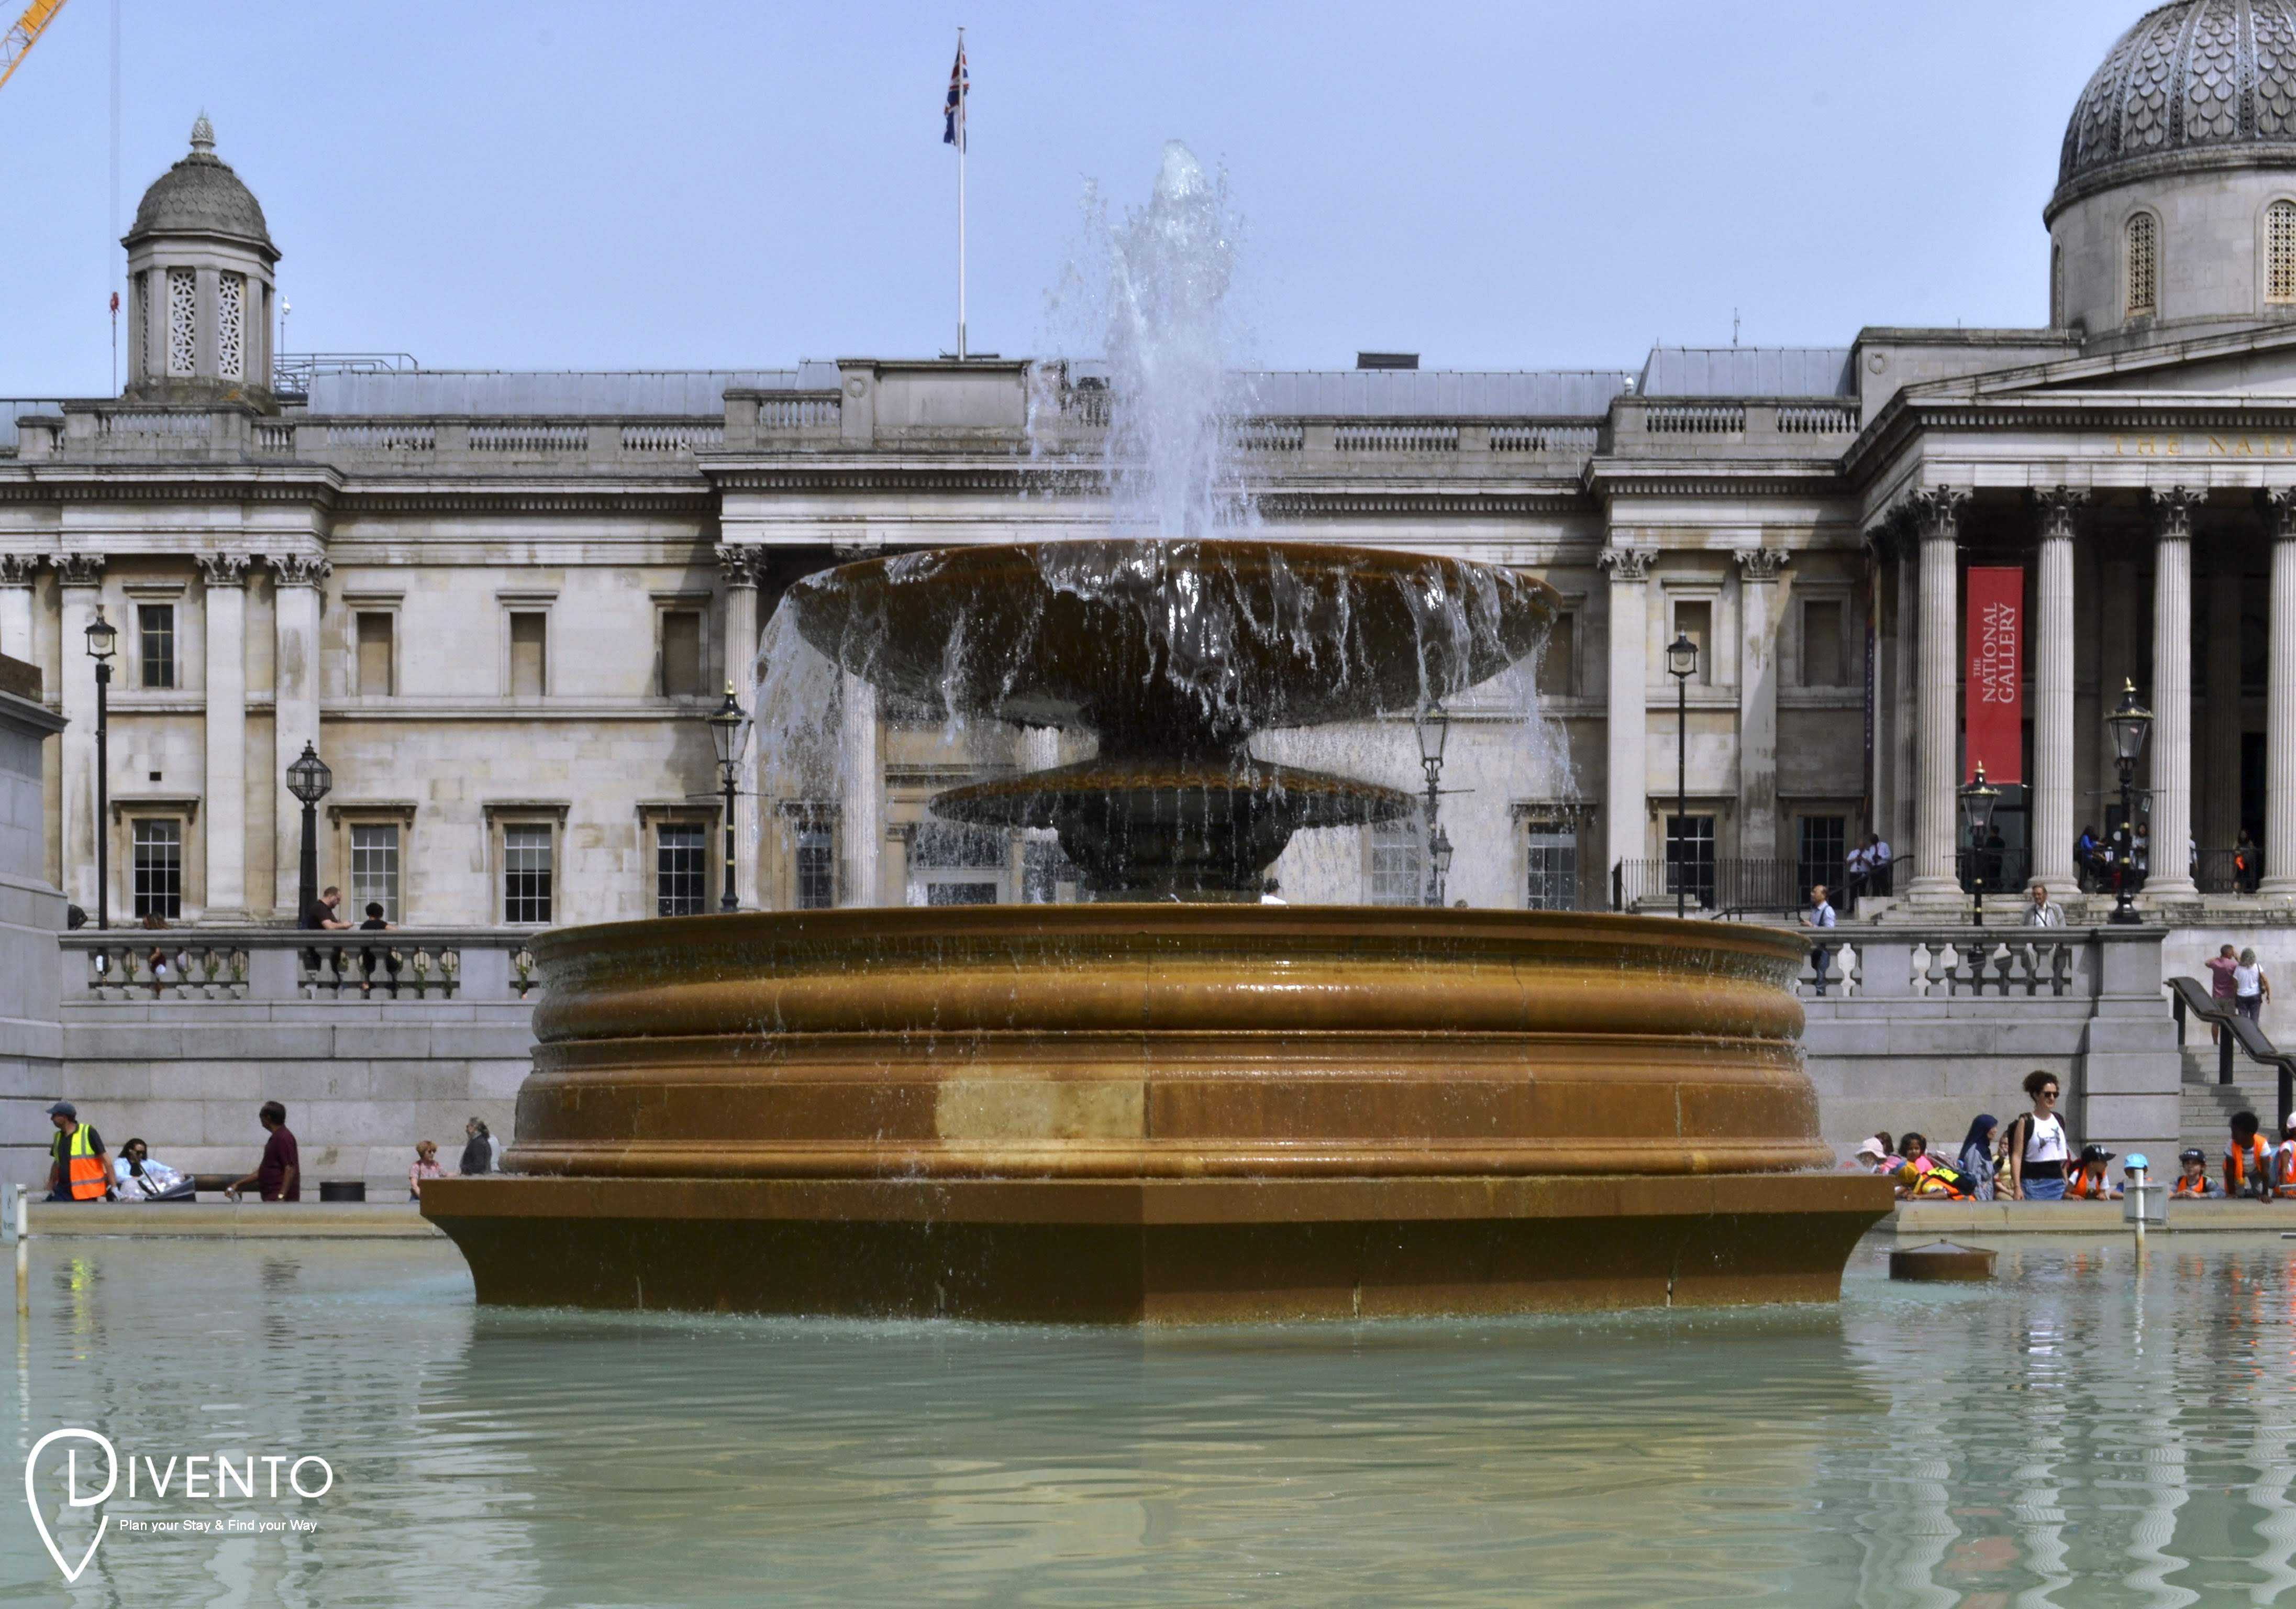 National Gallery, Londra, aperta tutto l'anno